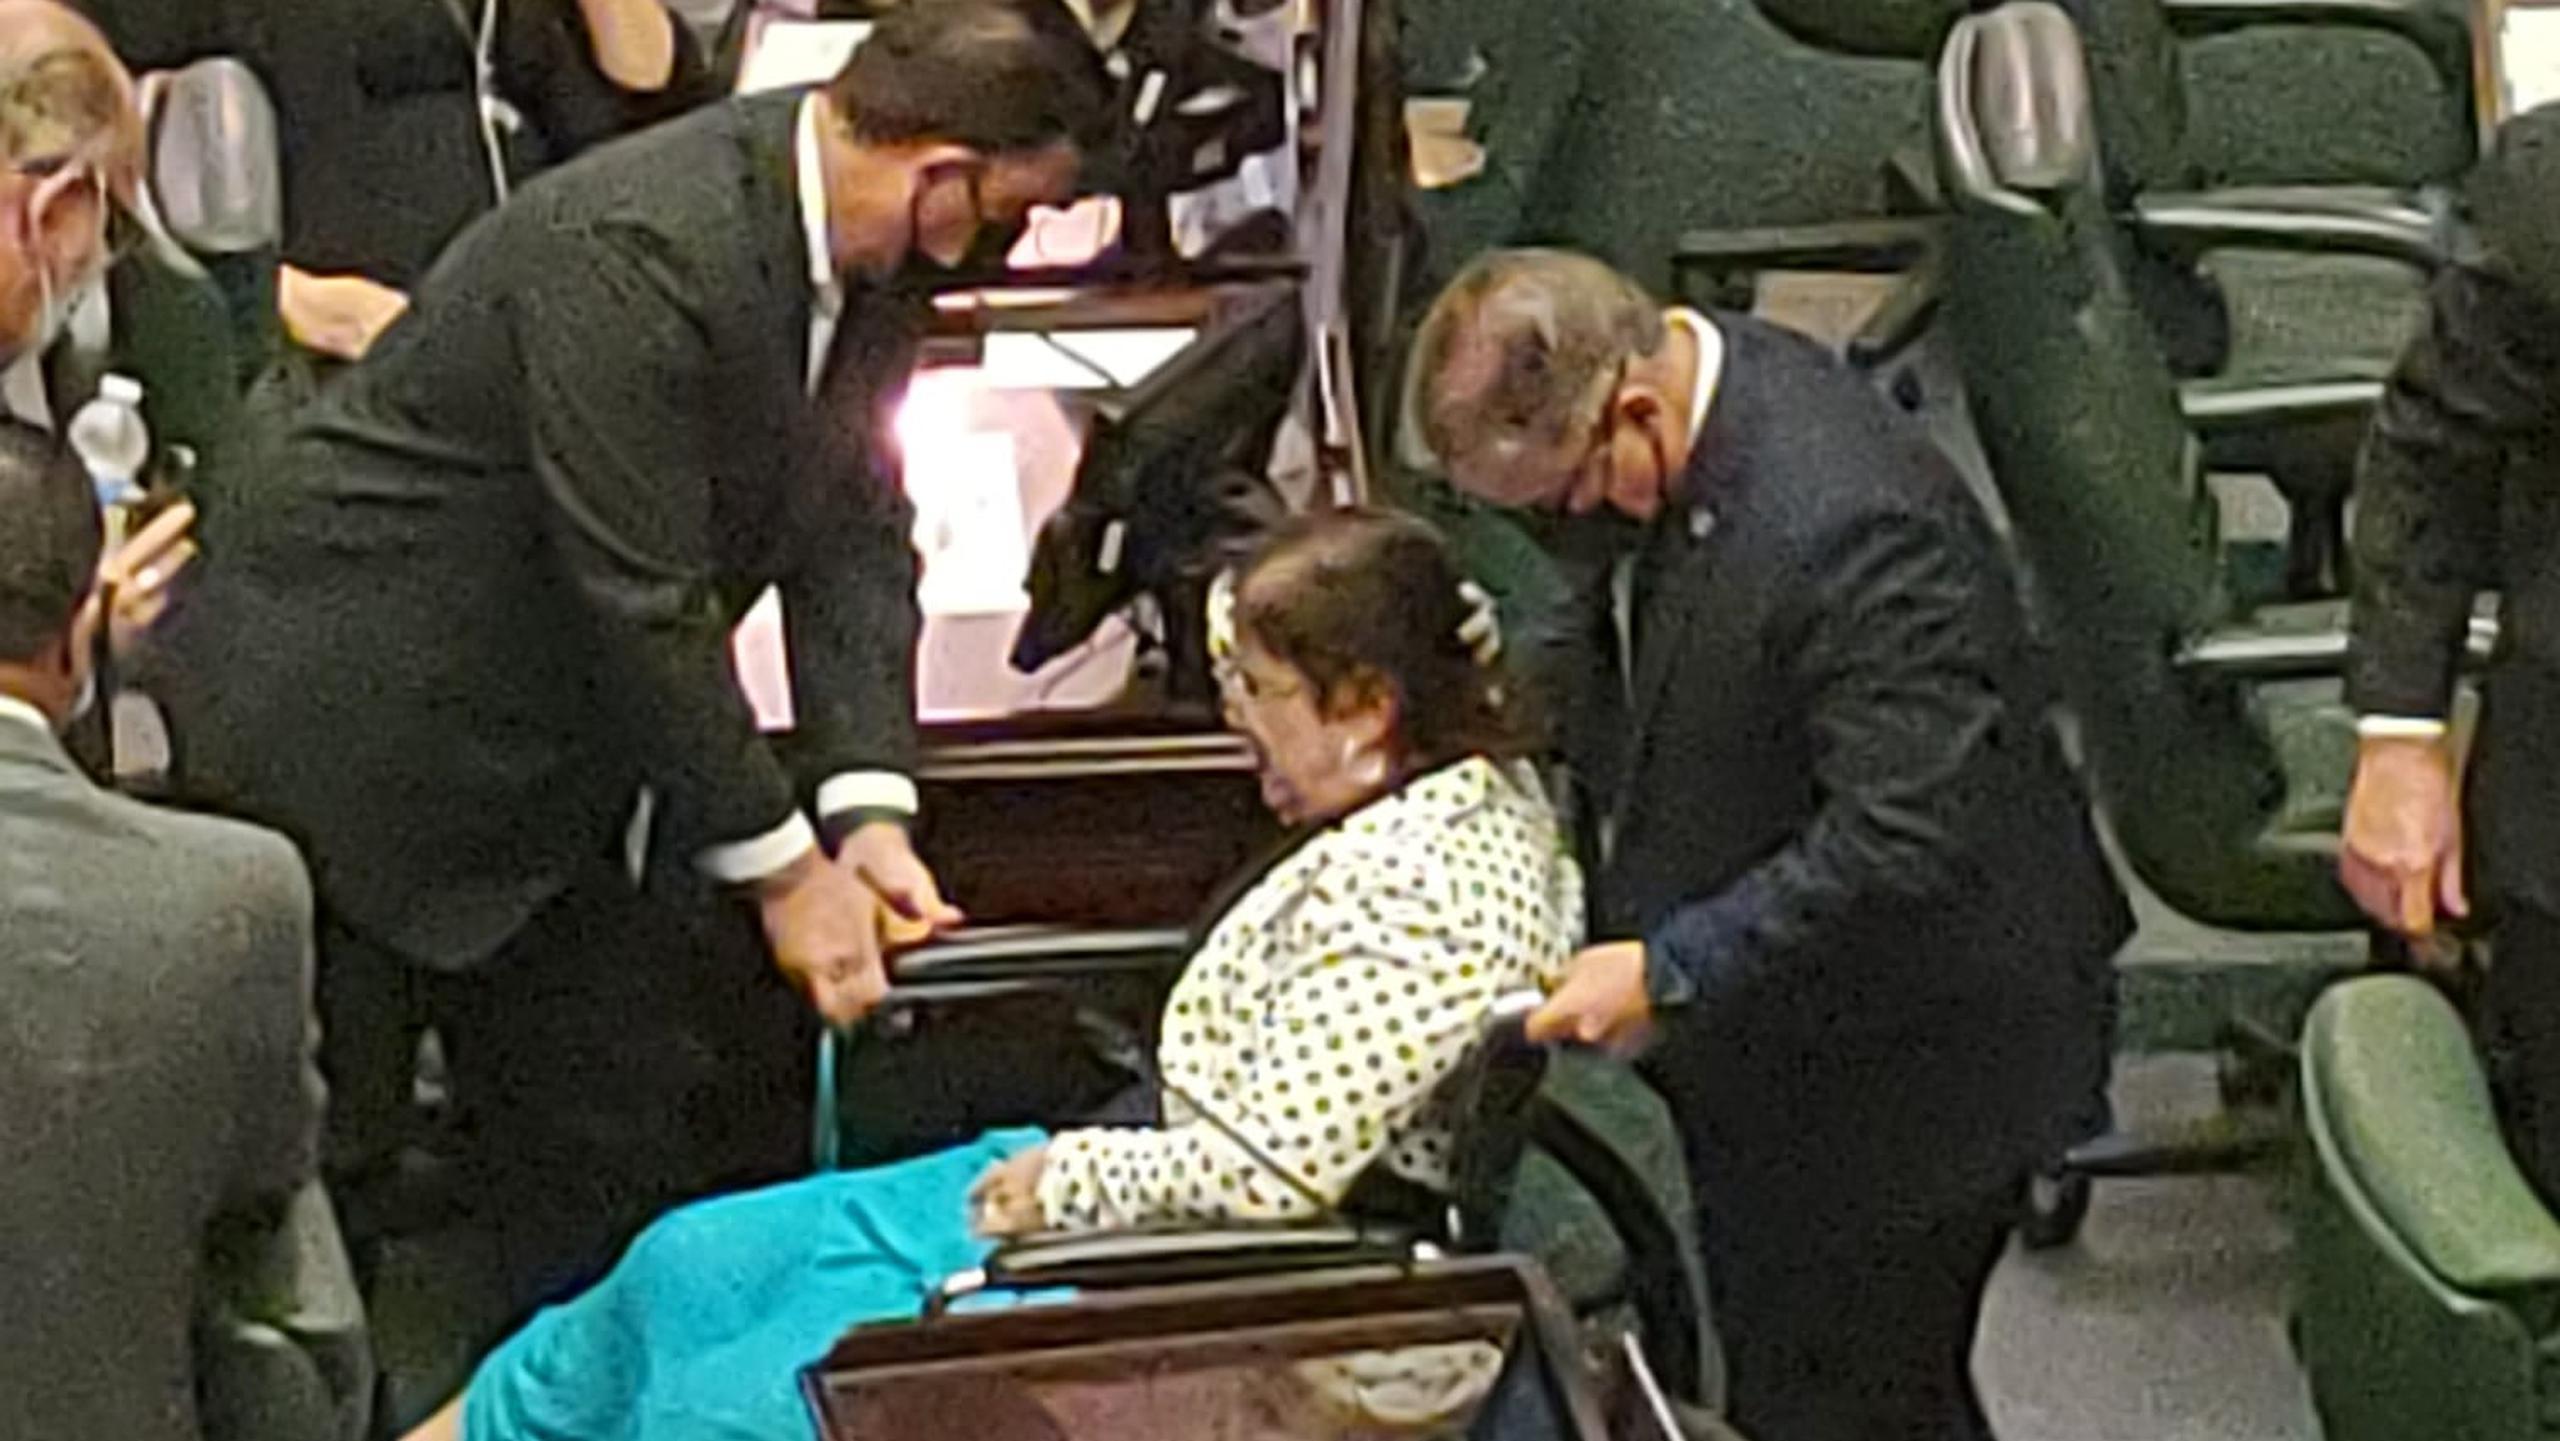 La representante Wanda del Valle fue sacada en silla de ruedas del hemiciclo ayer, tras desmayarse.